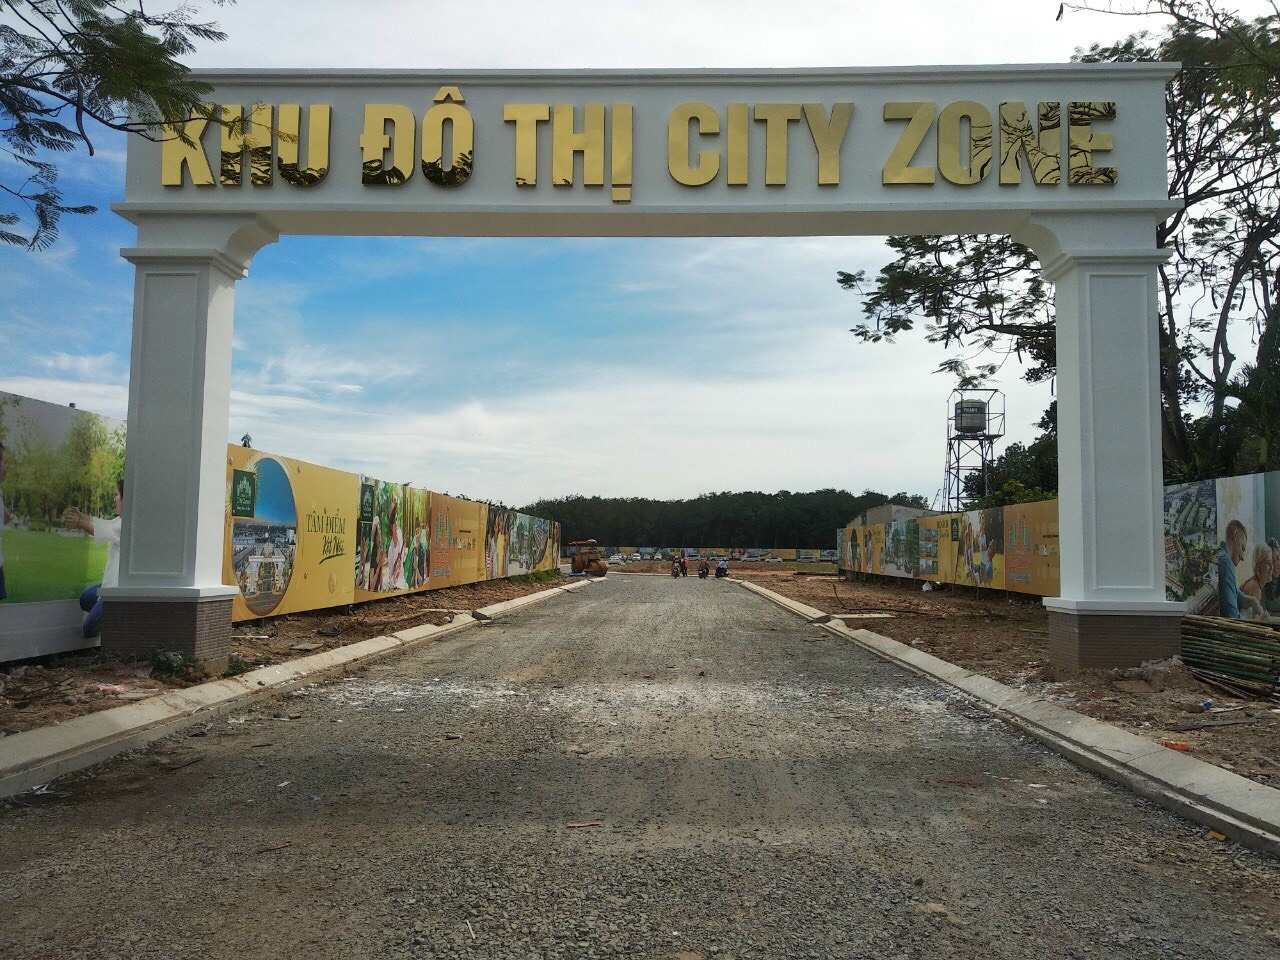 Cổng chính của dự án BenCat City Zone (Ảnh chụp vào ngày 29/11/2020)